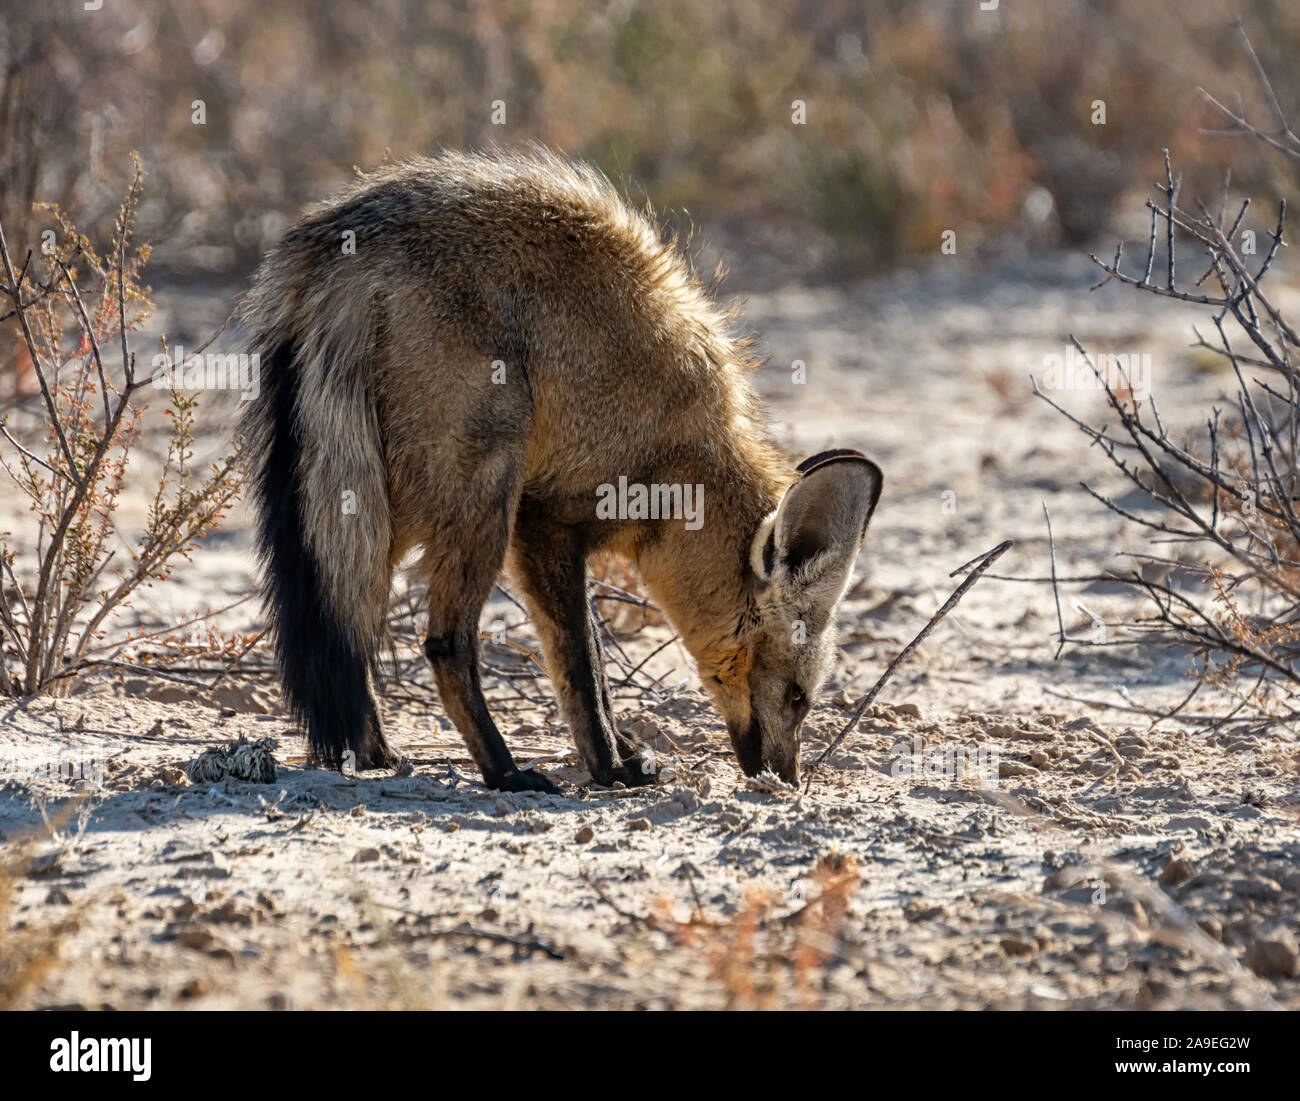 Un Bat-eared Fox rovistando nel sud della savana africana Foto Stock